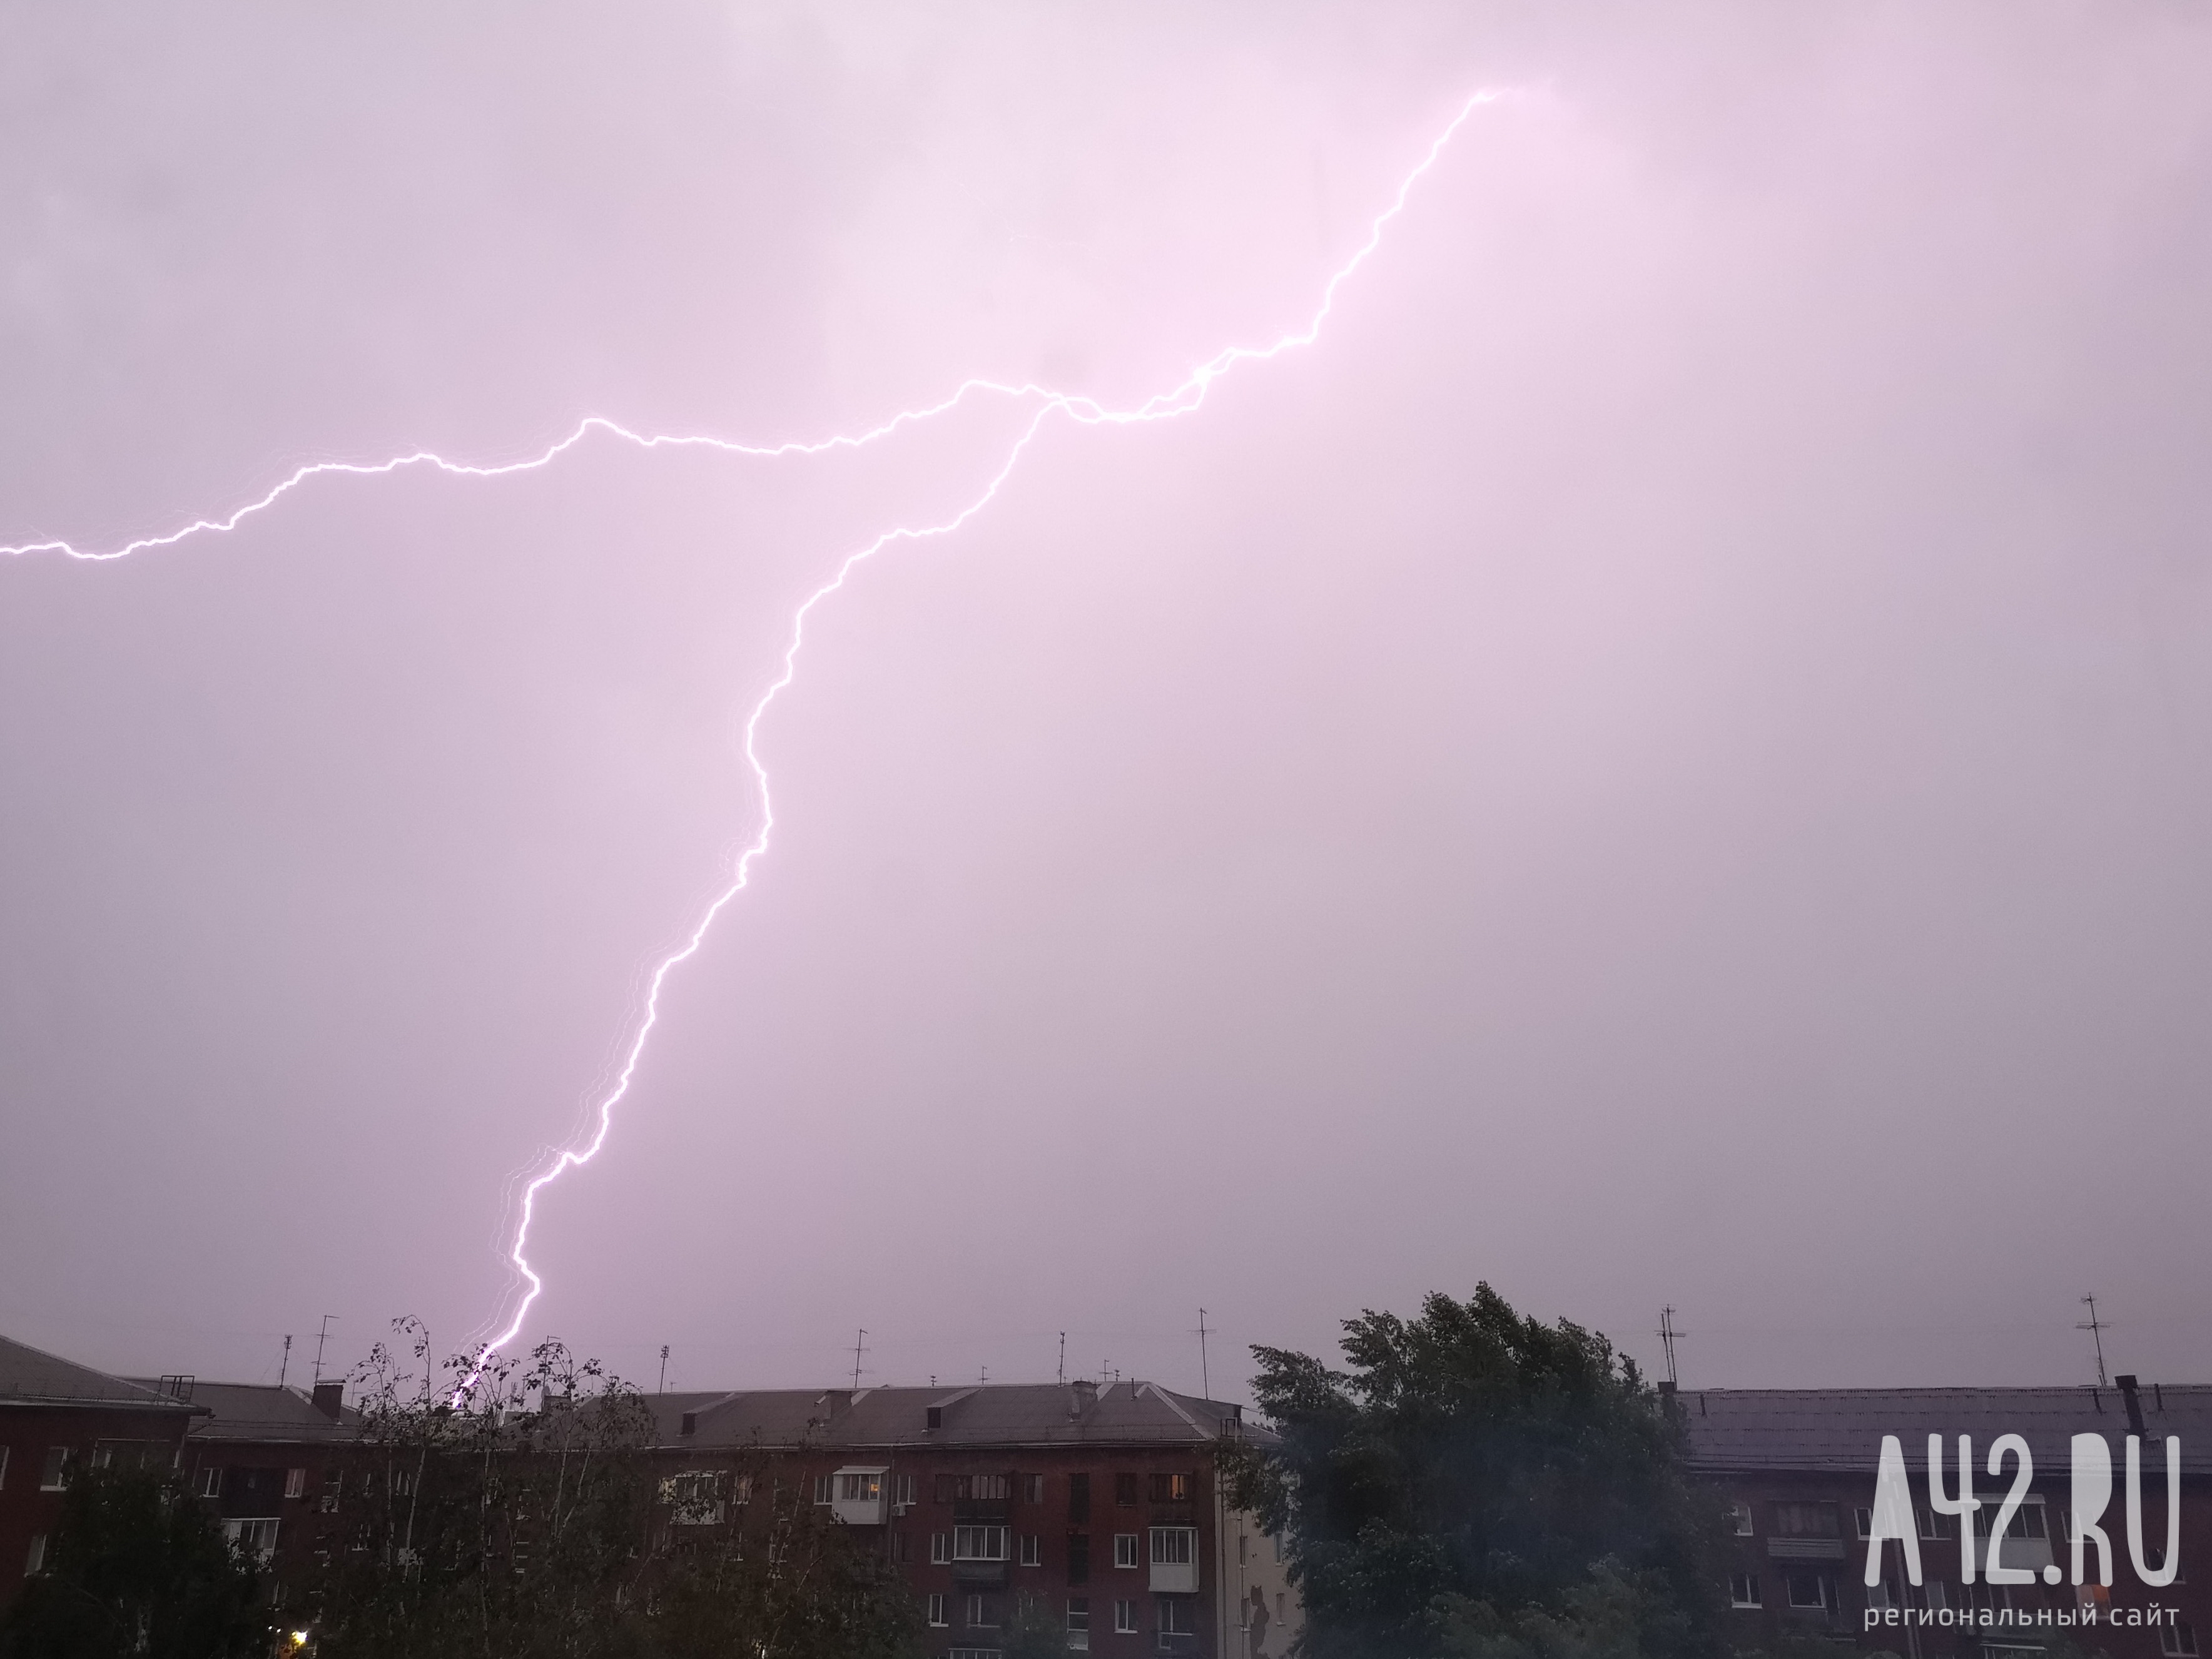 Сильные дожди, грозы, град, шквалистые усиления ветра: синоптики предупредили об ухудшении погоды в ближайший час в Кузбассе